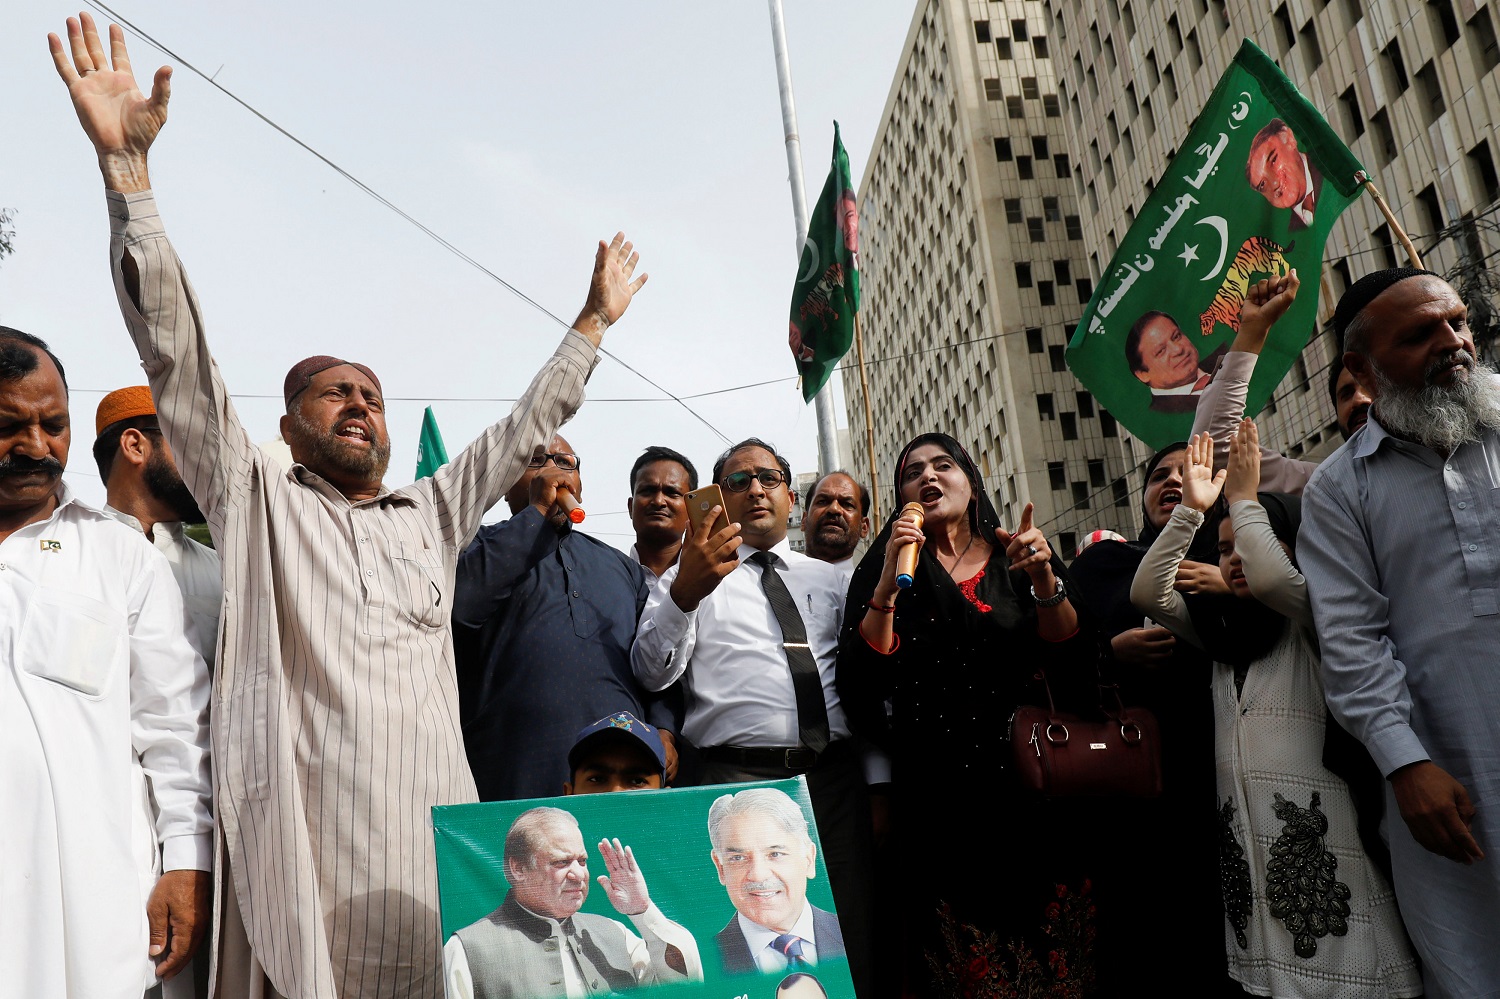 Luto oficial tras atentado del Estado Islámico en acto electoral paquistaní